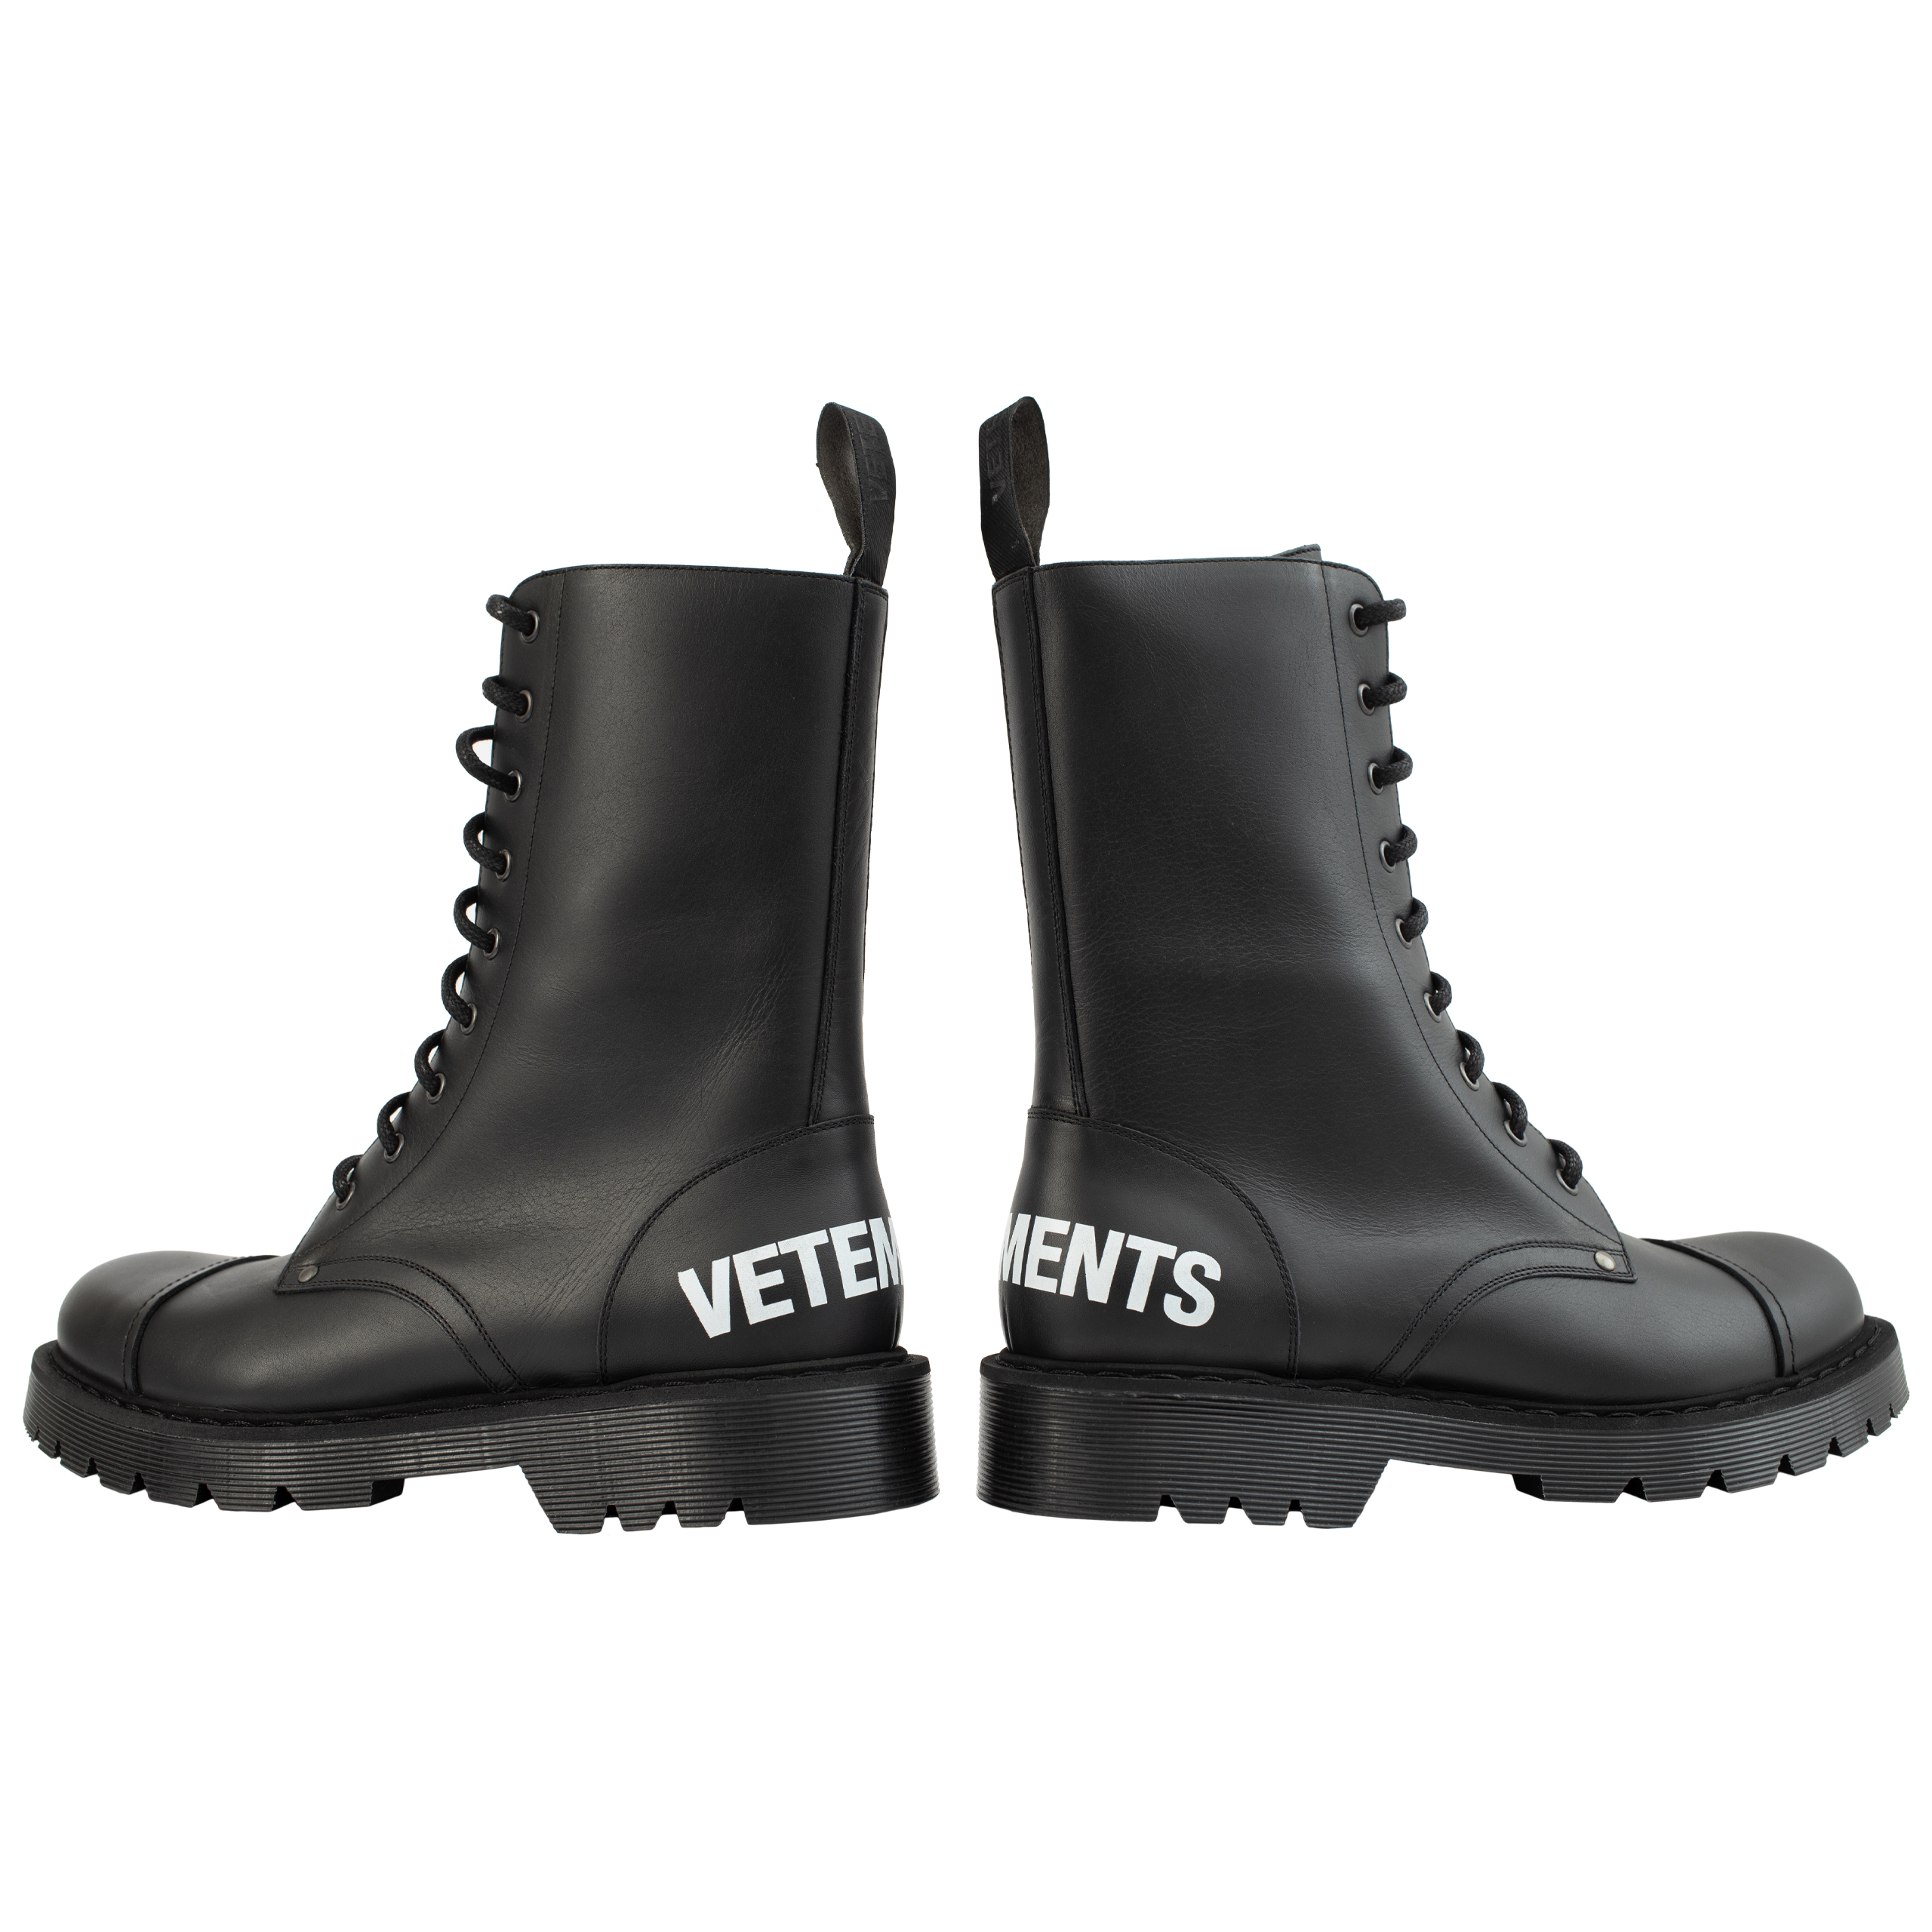 Черные ботинки на шнуровке с логотипом Vetements UA52BO200B/2414, размер 45;43;42;41;40;39 UA52BO200B/2414 - фото 1